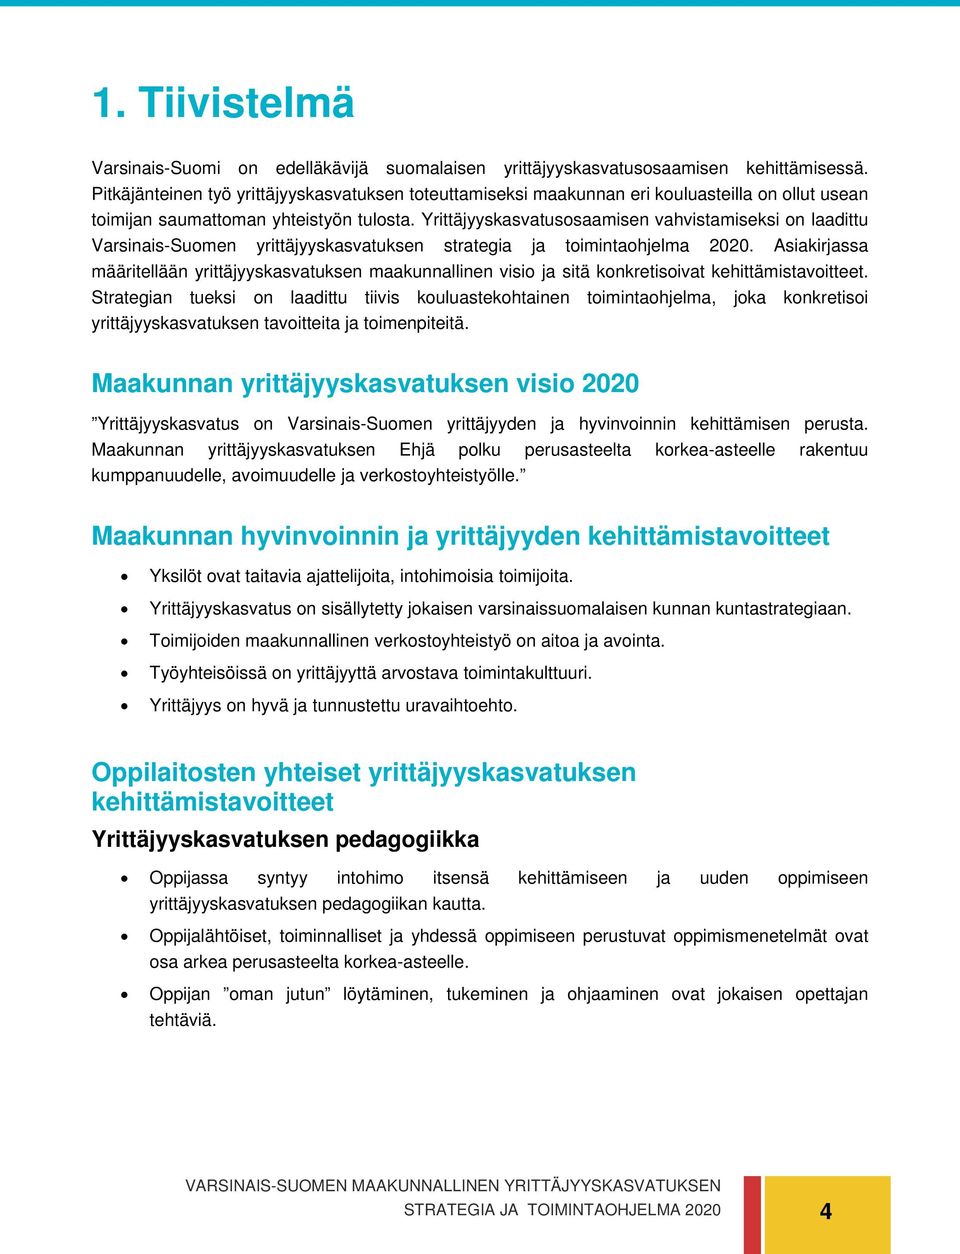 Yrittäjyyskasvatusosaamisen vahvistamiseksi on laadittu Varsinais-Suomen yrittäjyyskasvatuksen strategia ja toimintaohjelma 2020.